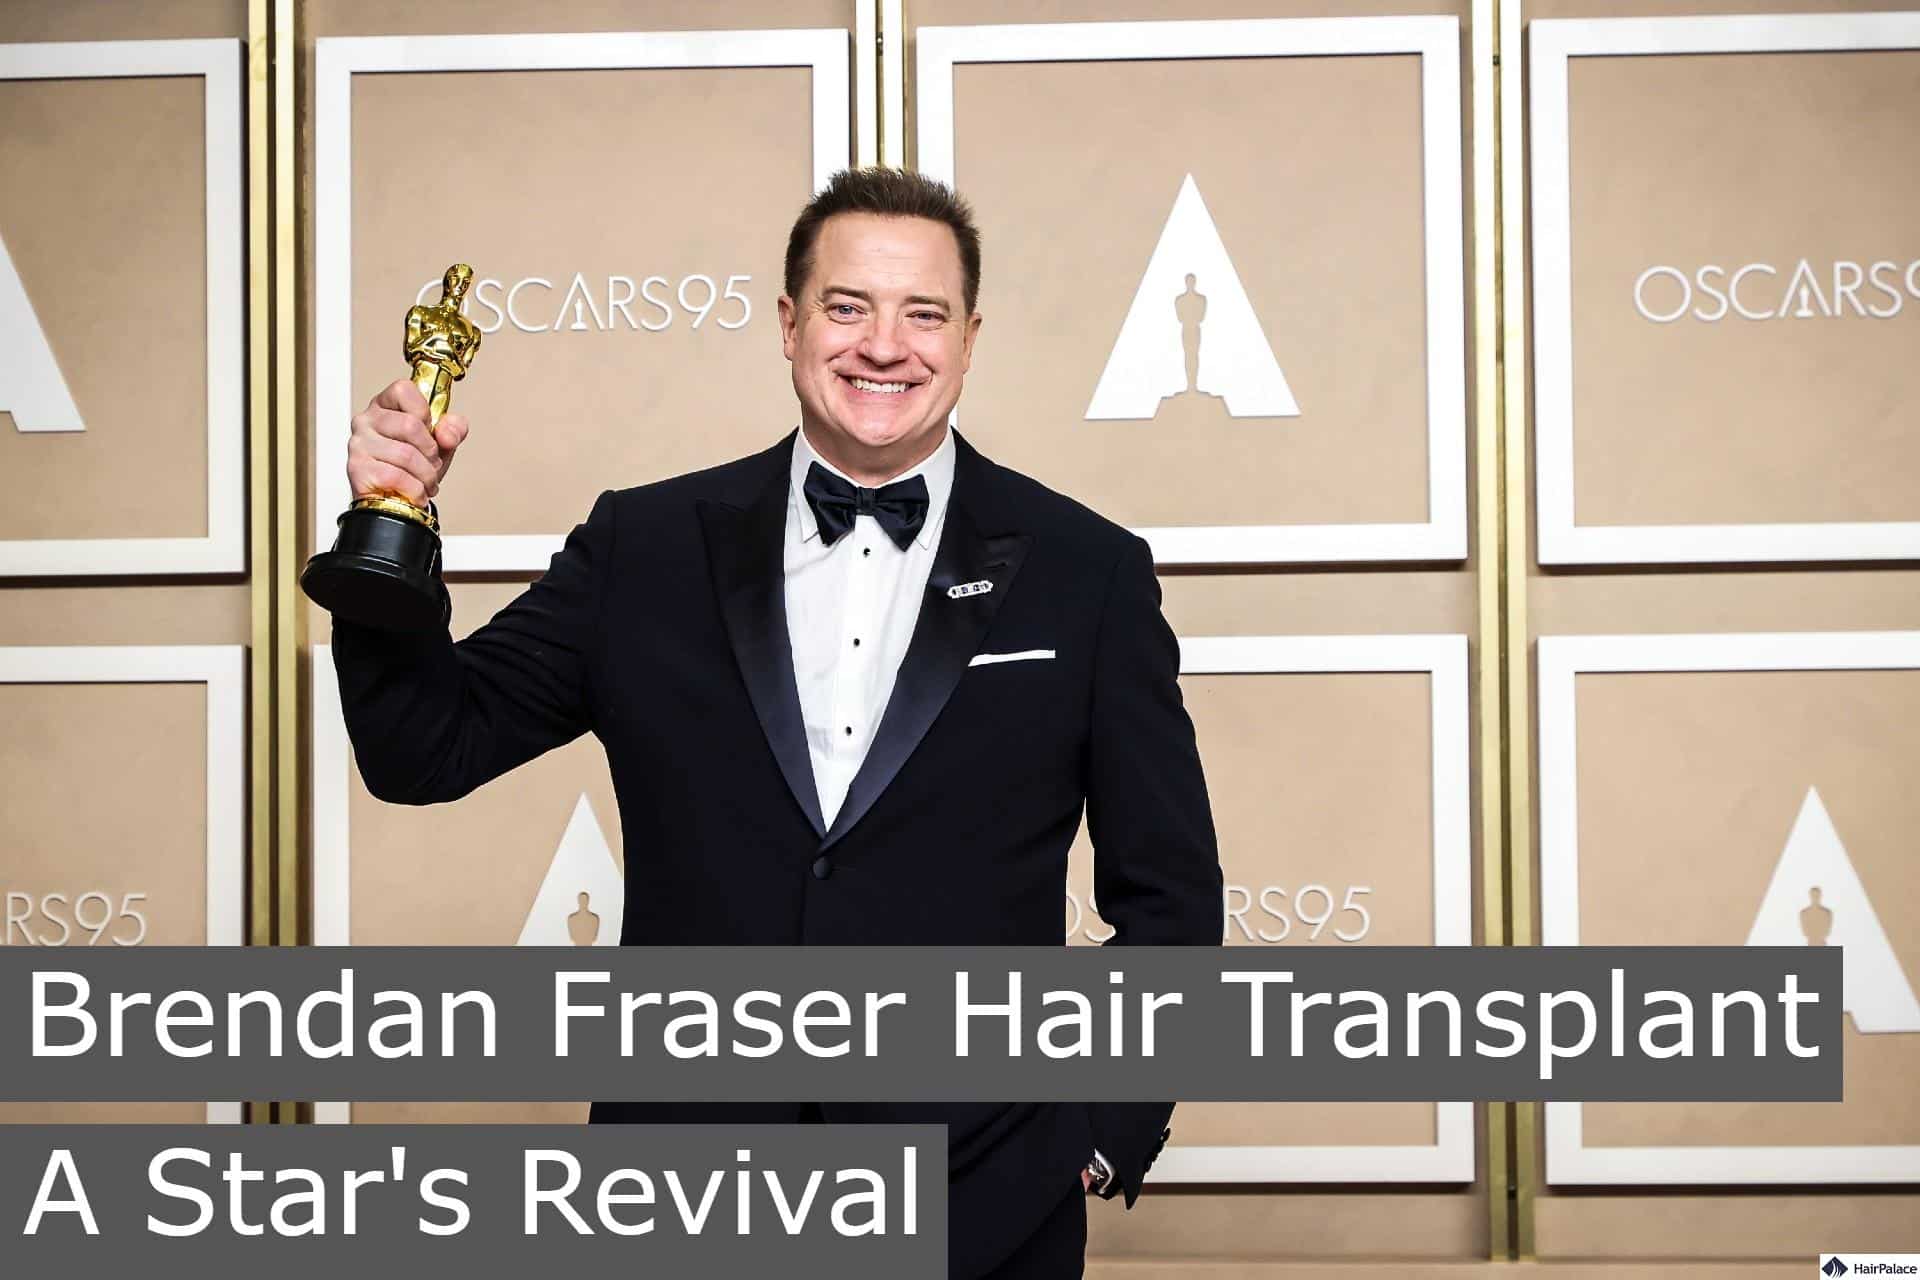 brendan fraser hair transplant a star's revival